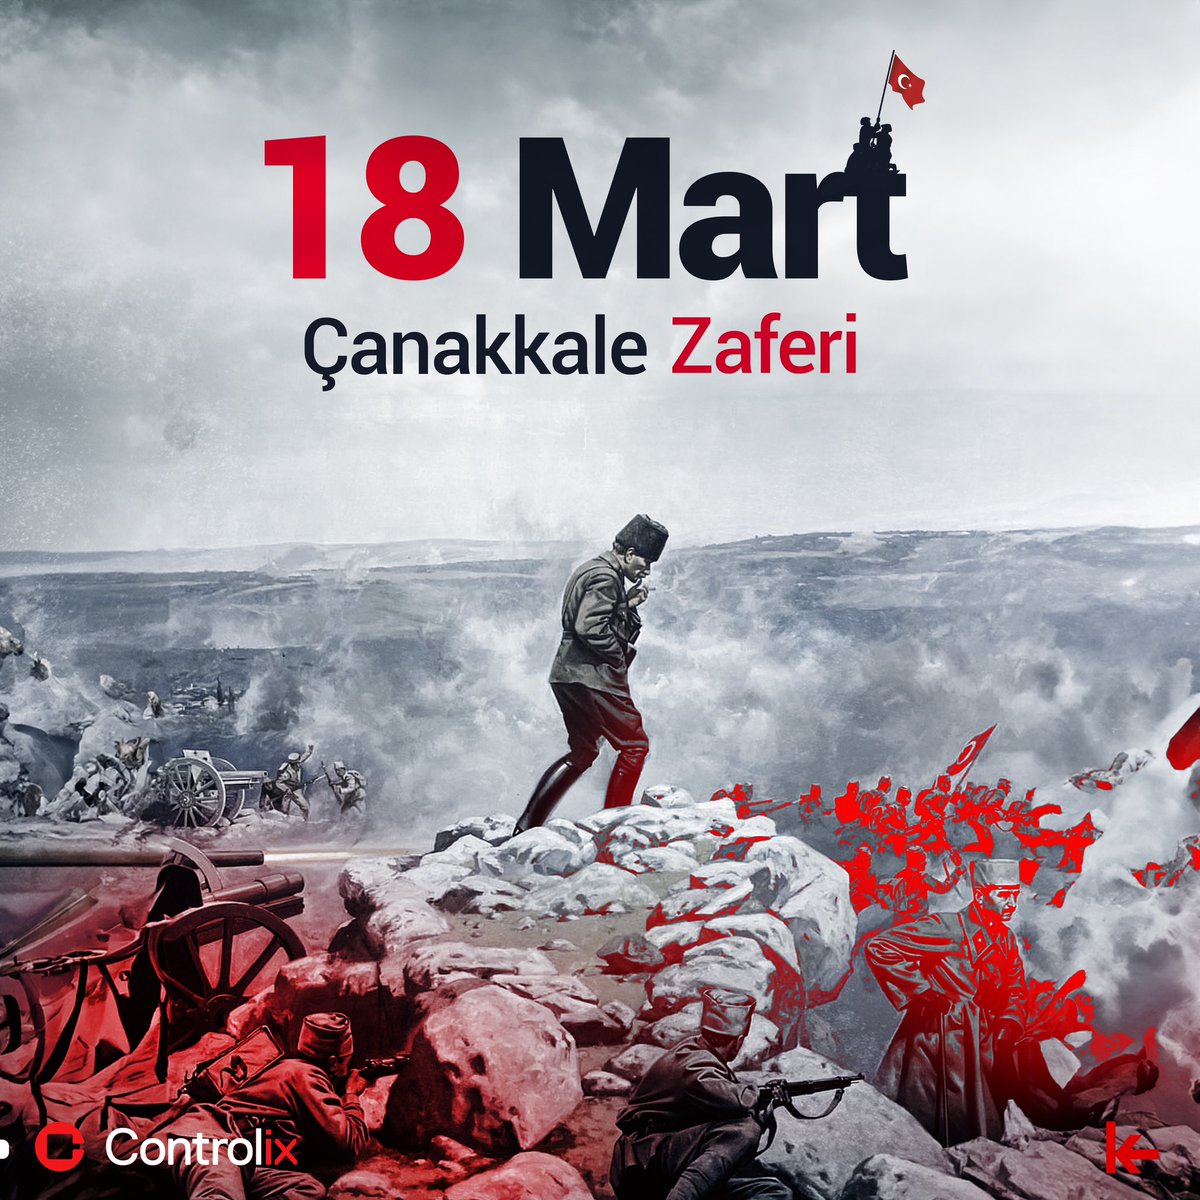 18 Mart Çanakkale Zaferi’nin 109. yıl dönümünde, başta Ulu Önderimiz Mustafa Kemal Atatürk olmak üzere sarsılmaz bir cesaret ve fedakârlık sergileyen şehitlerimizi anıyoruz ve miraslarını minnet ve gururla onurlandırıyoruz.